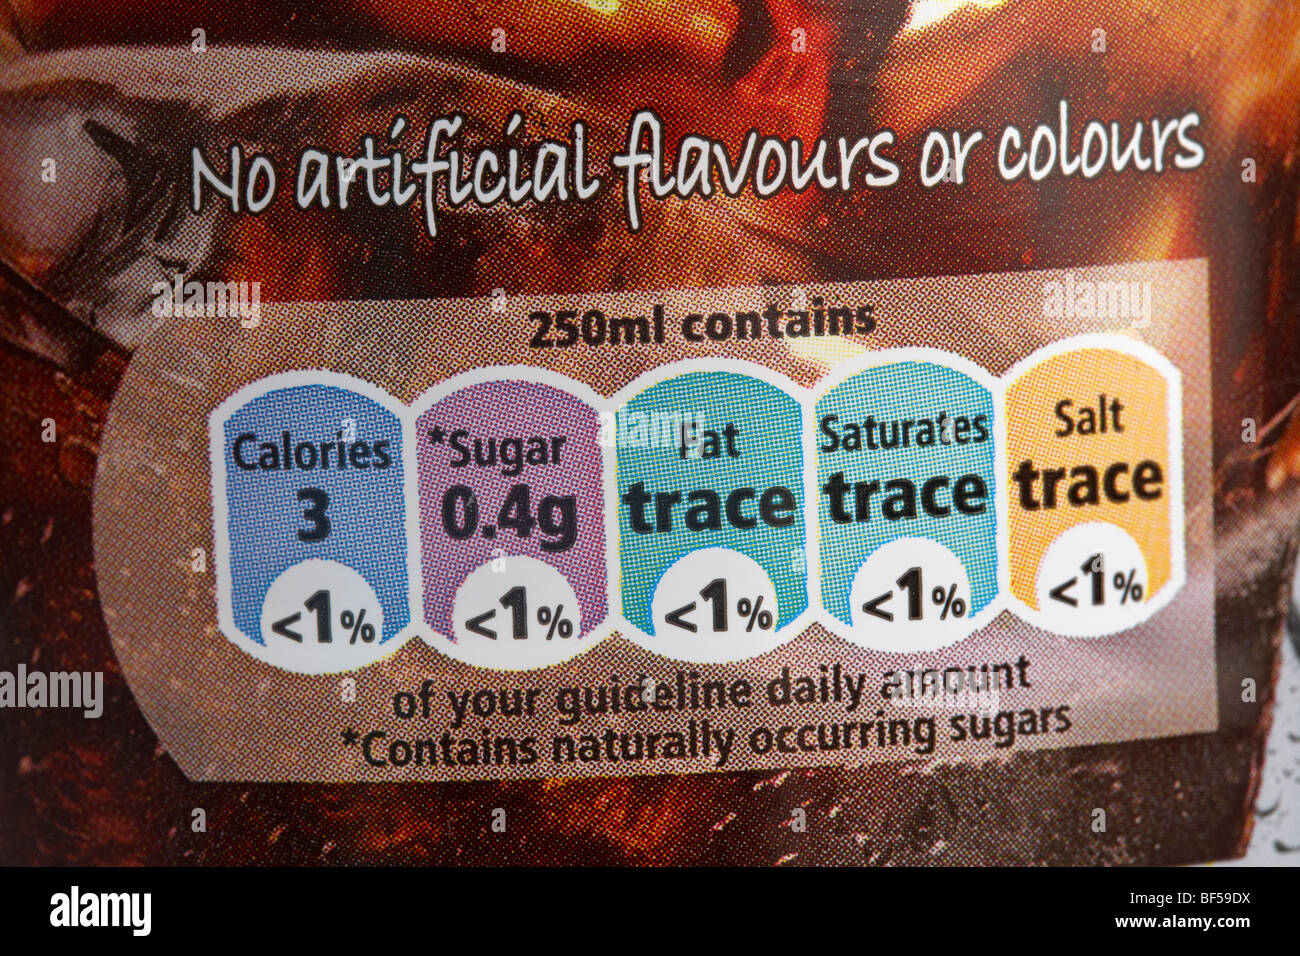 Prozentsatz der Leitlinie tägliche Menge Lebensmittel Label auf eine Flasche Cola in Großbritannien zeigen Spuren und geringen Prozentsätzen Stockfoto